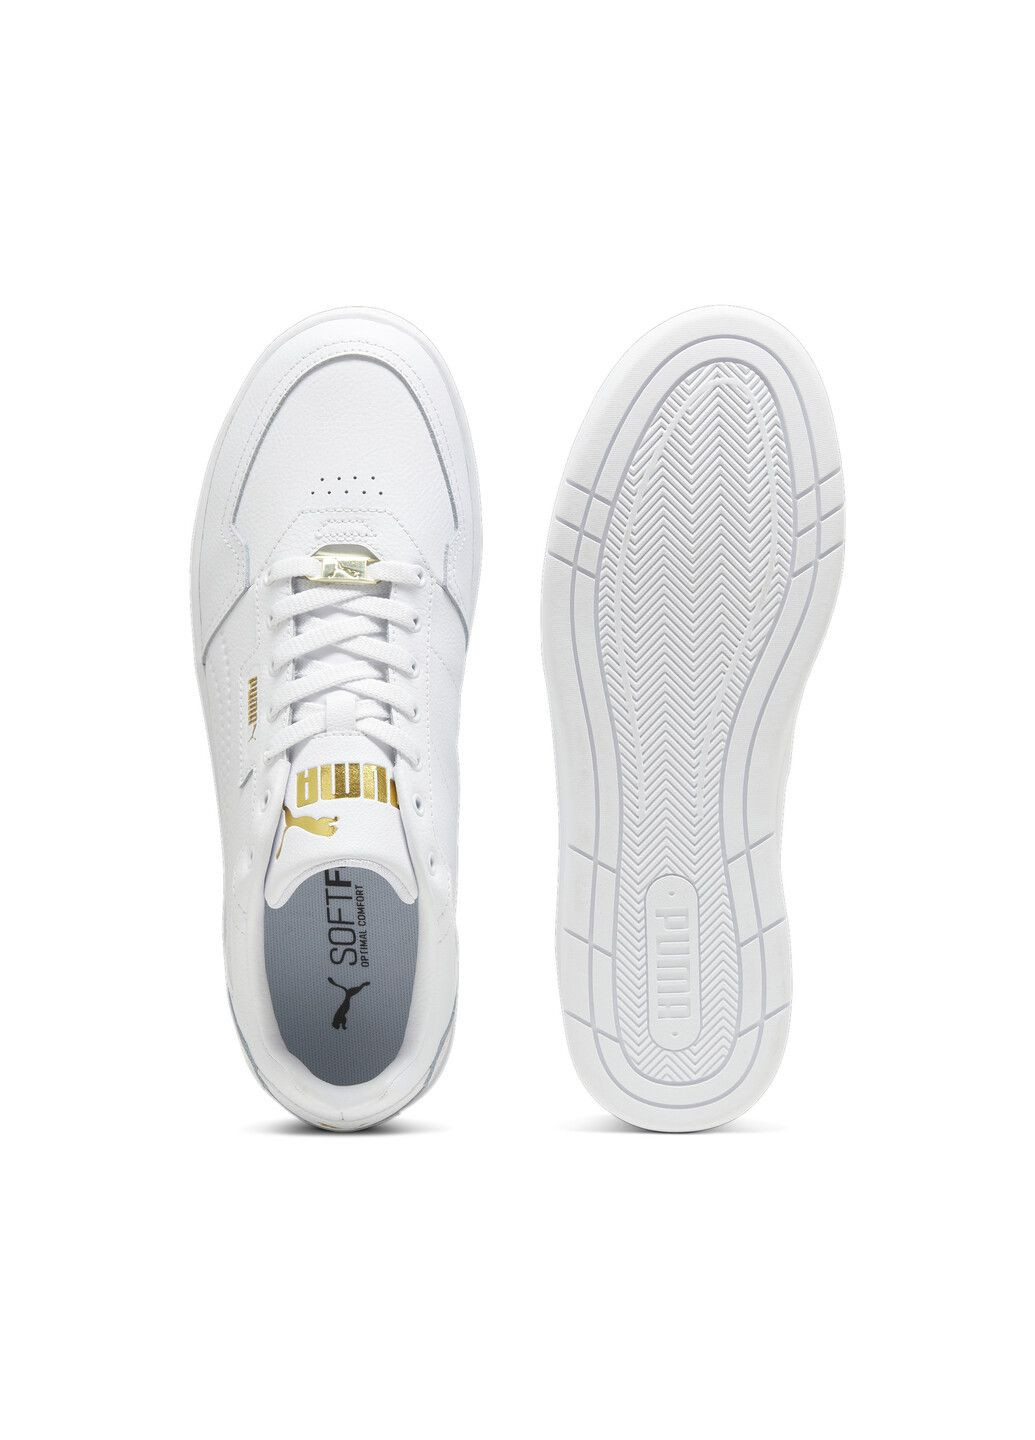 Белые всесезонные кеды court classic lux sneakers Puma